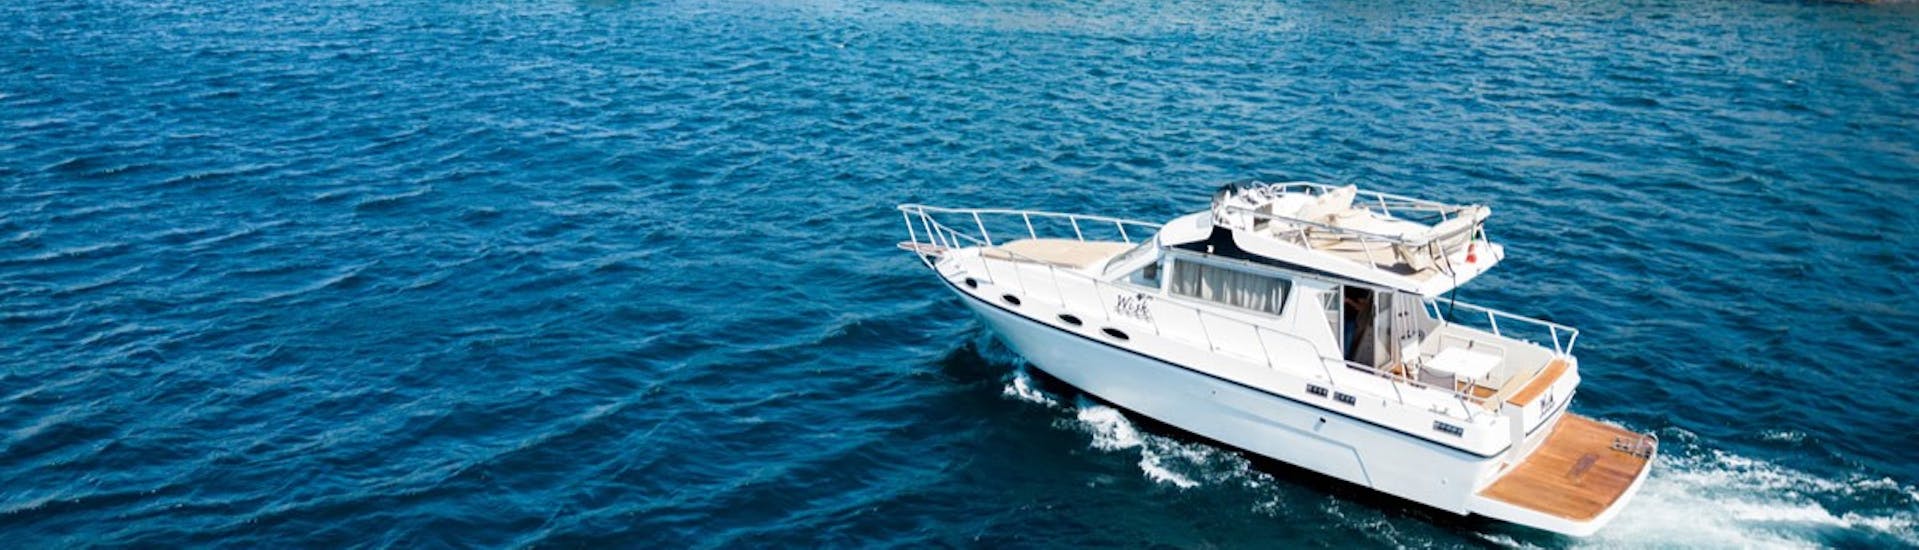 Le bateau utilisé pour l'Excursion privée en bateau de Catane aux îles Cyclopes avec Apéritif avec Wish Boat Rent Catania.